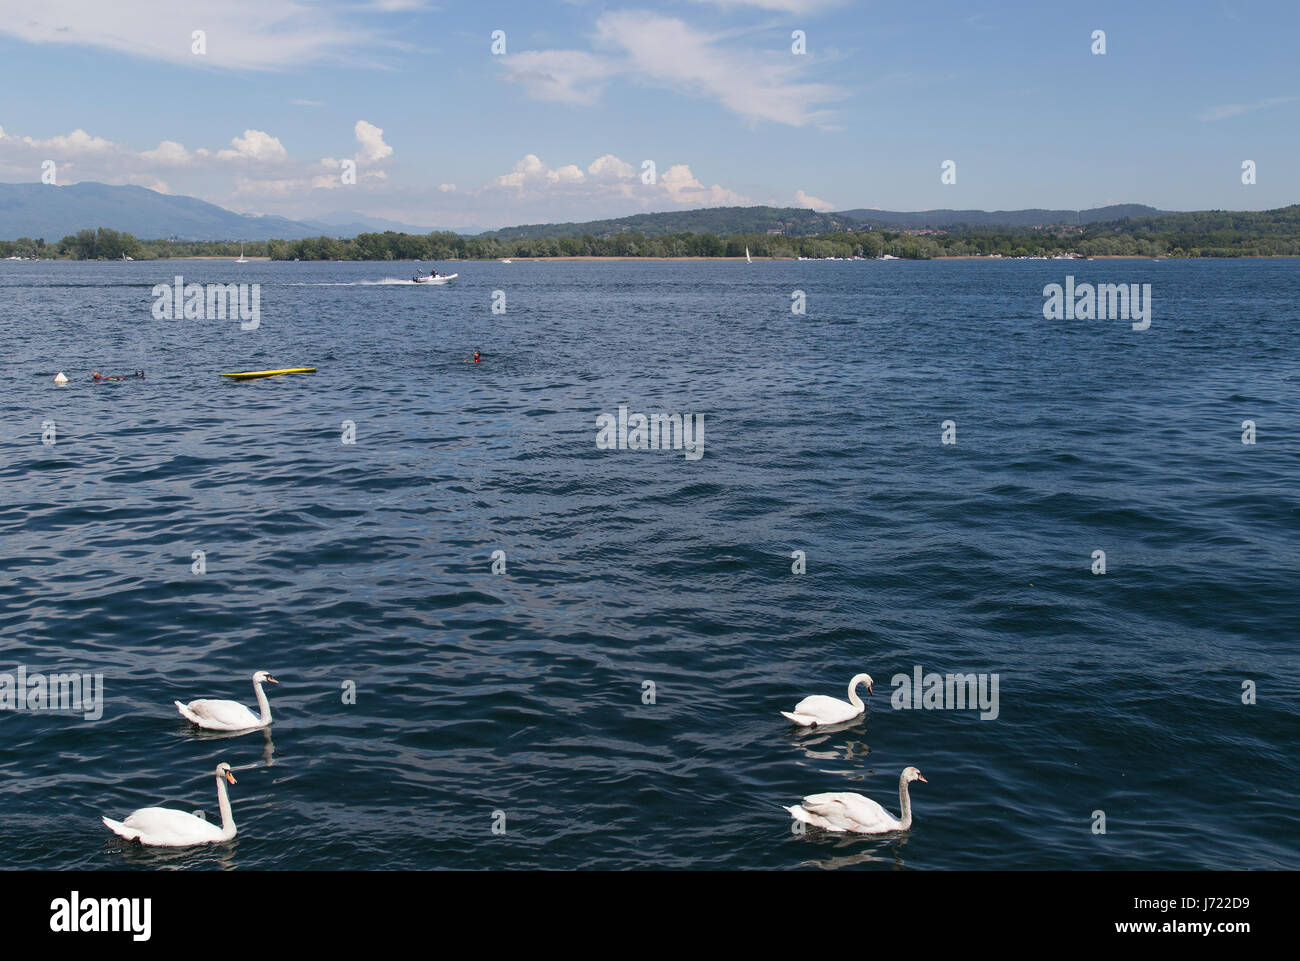 Swans in Arona, Lago Maggiore in Italy Stock Photo